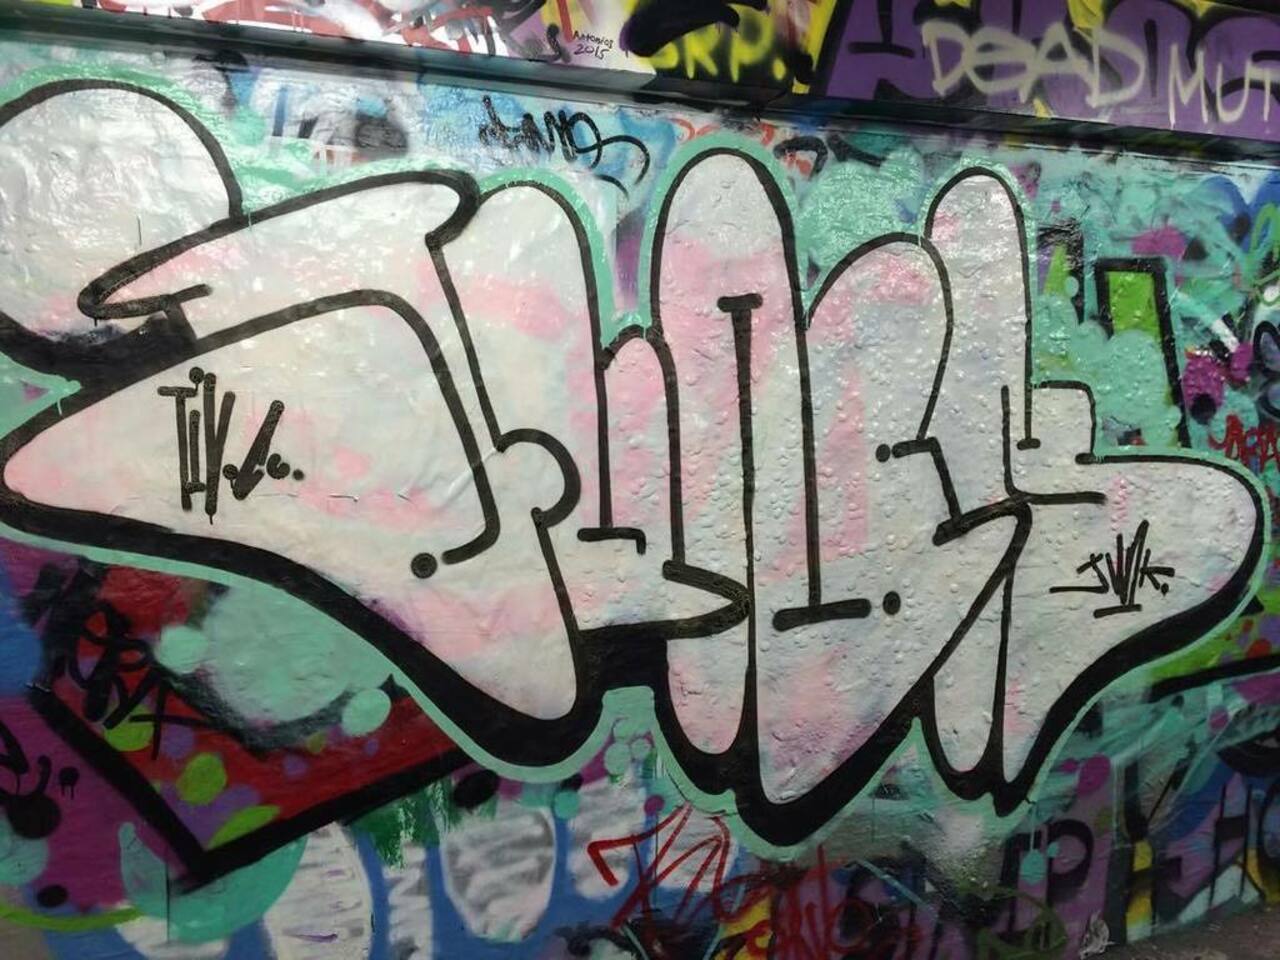 JUNKD 
#aerosolart #sydgraff #bombing #fatcap #sprayart #muralart #streetart #streetartlondon #graff #graffiti #van… http://t.co/gSsa5M8JzN